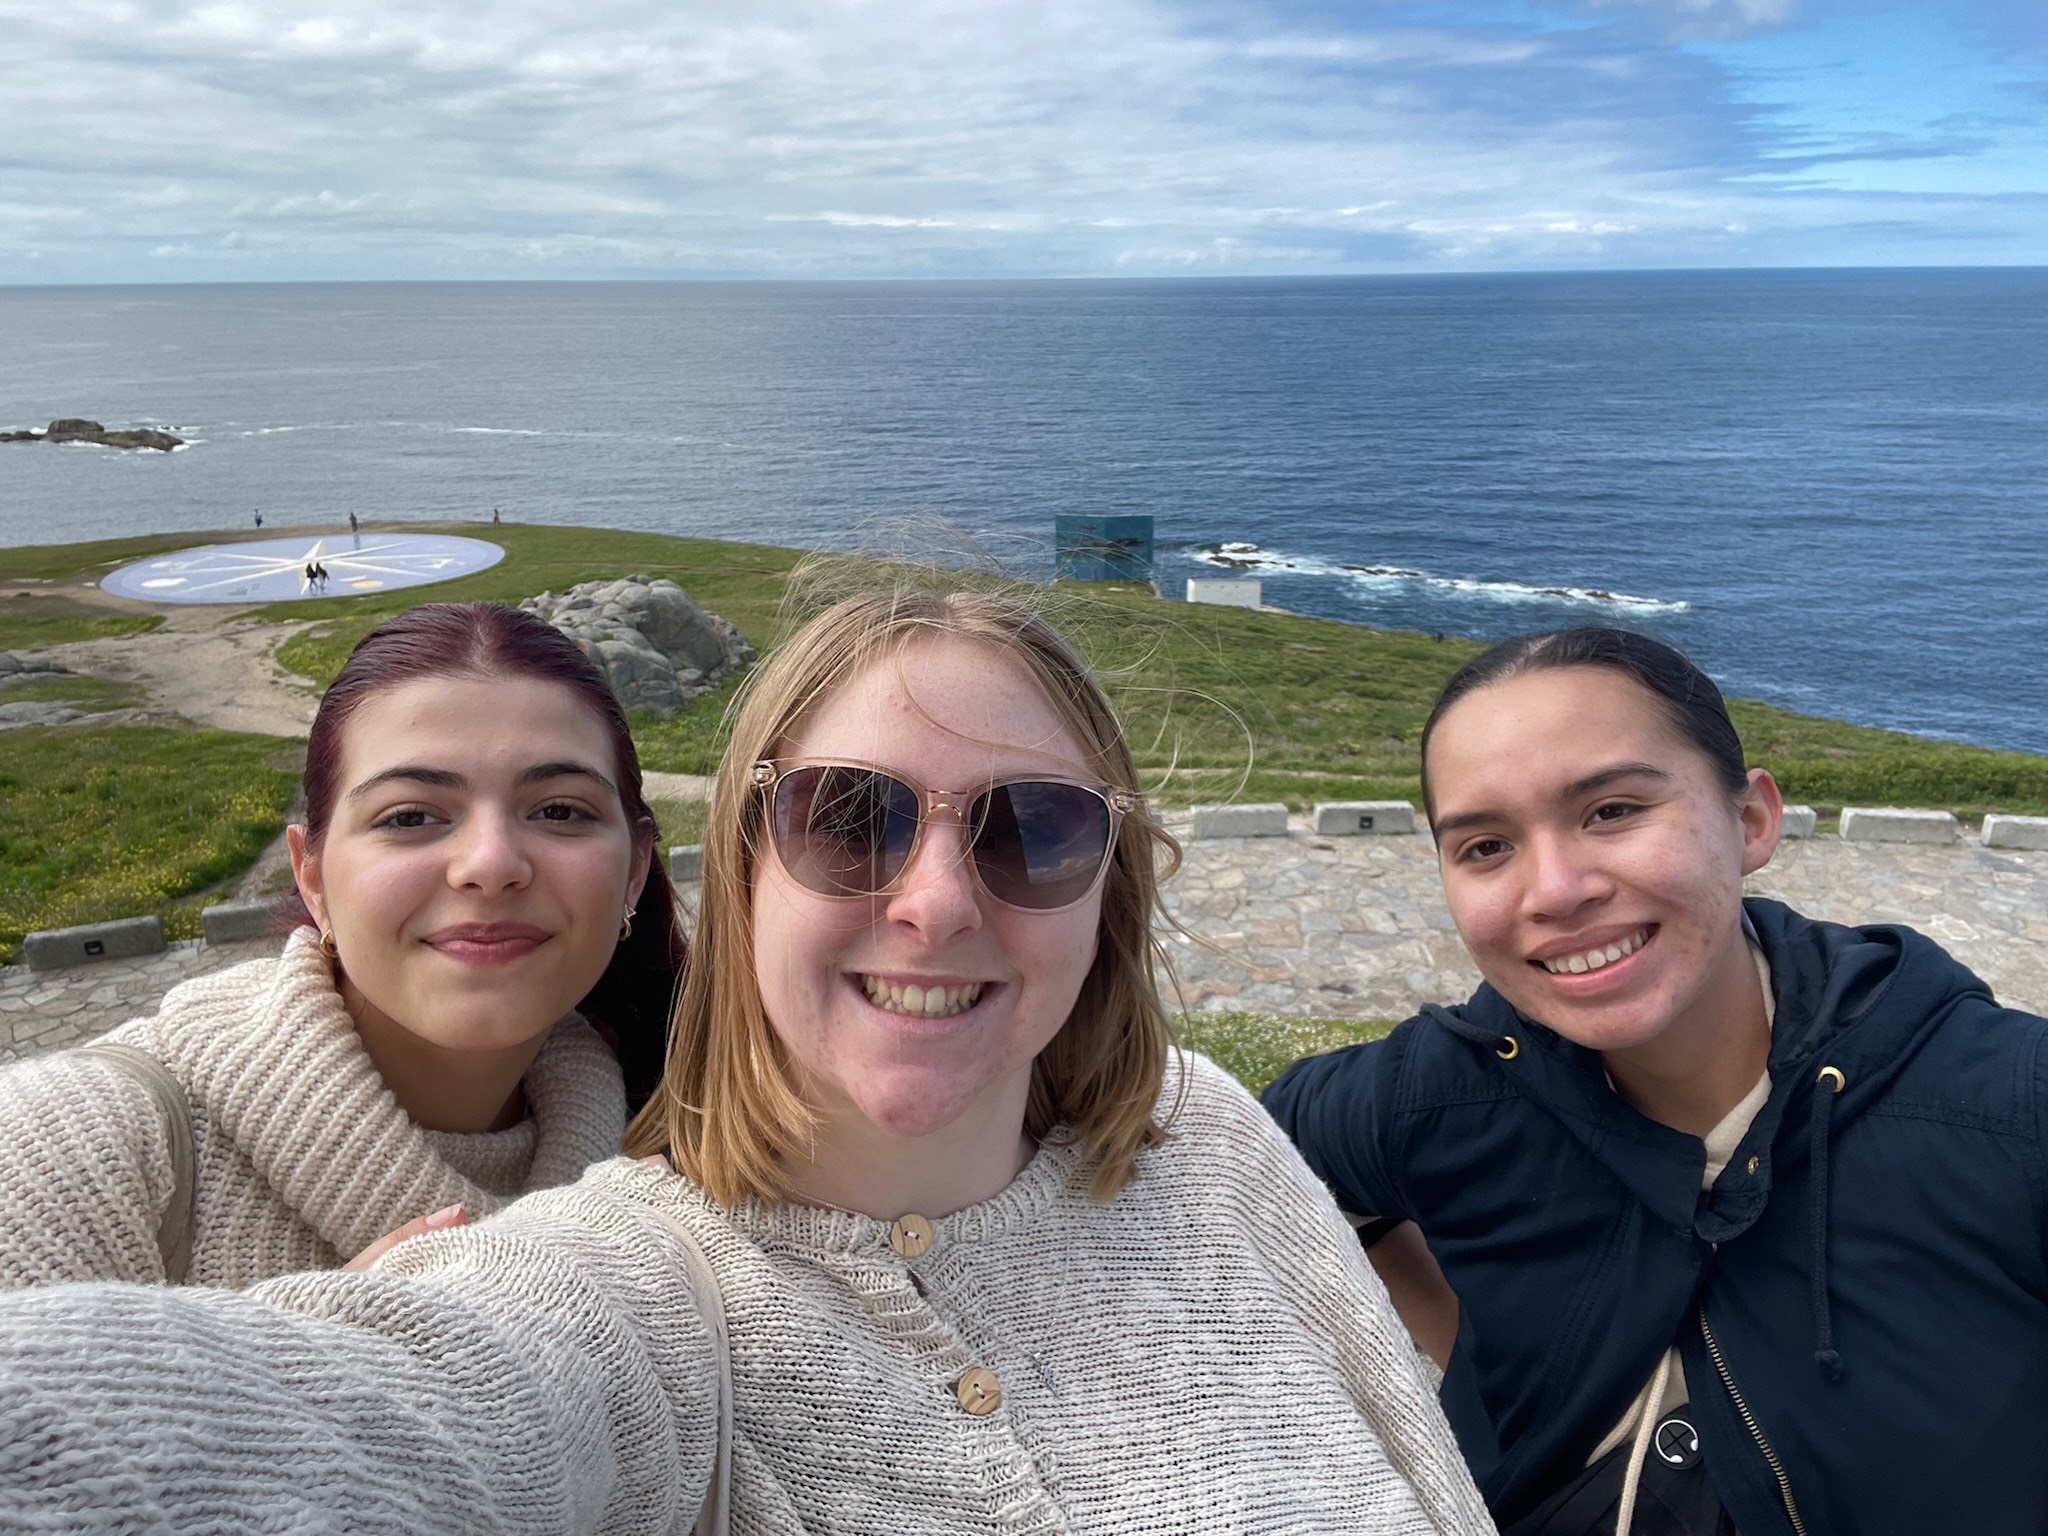 Group selfie in front of ocean in Spain